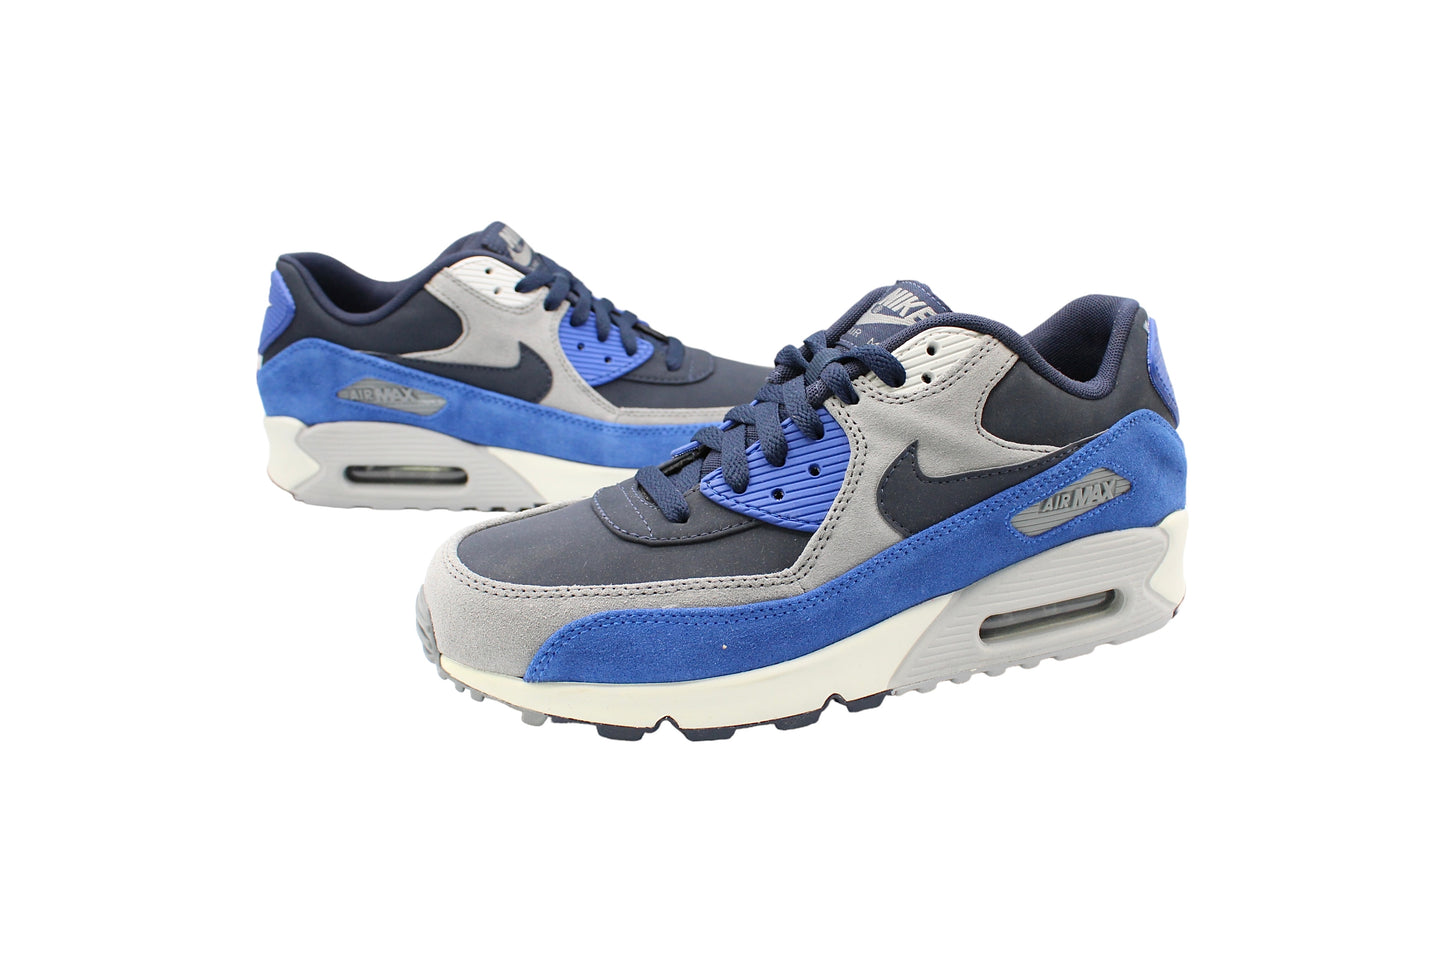 Nike Air Max 90 LTR Premium ‘Obsidean Blue Suede’